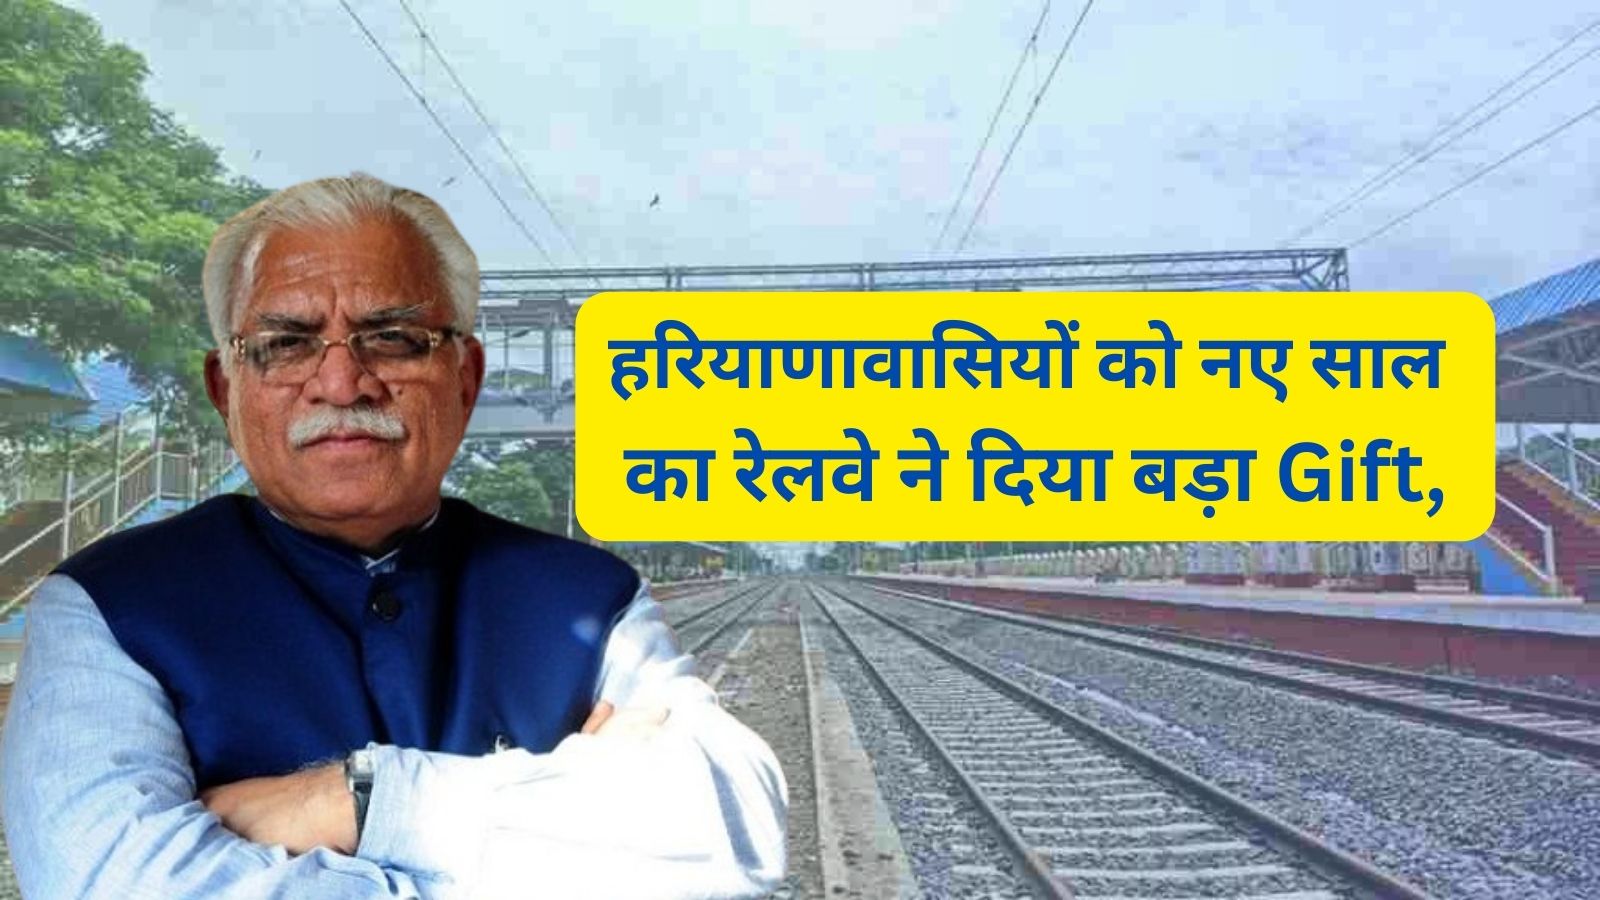 New Railway Line In Haryana:हरियाणावासियों को नए साल का रेलवे ने दिया बड़ा Gift,इस जिले में बिछाई जाएगी नई रेलवे लाइन,